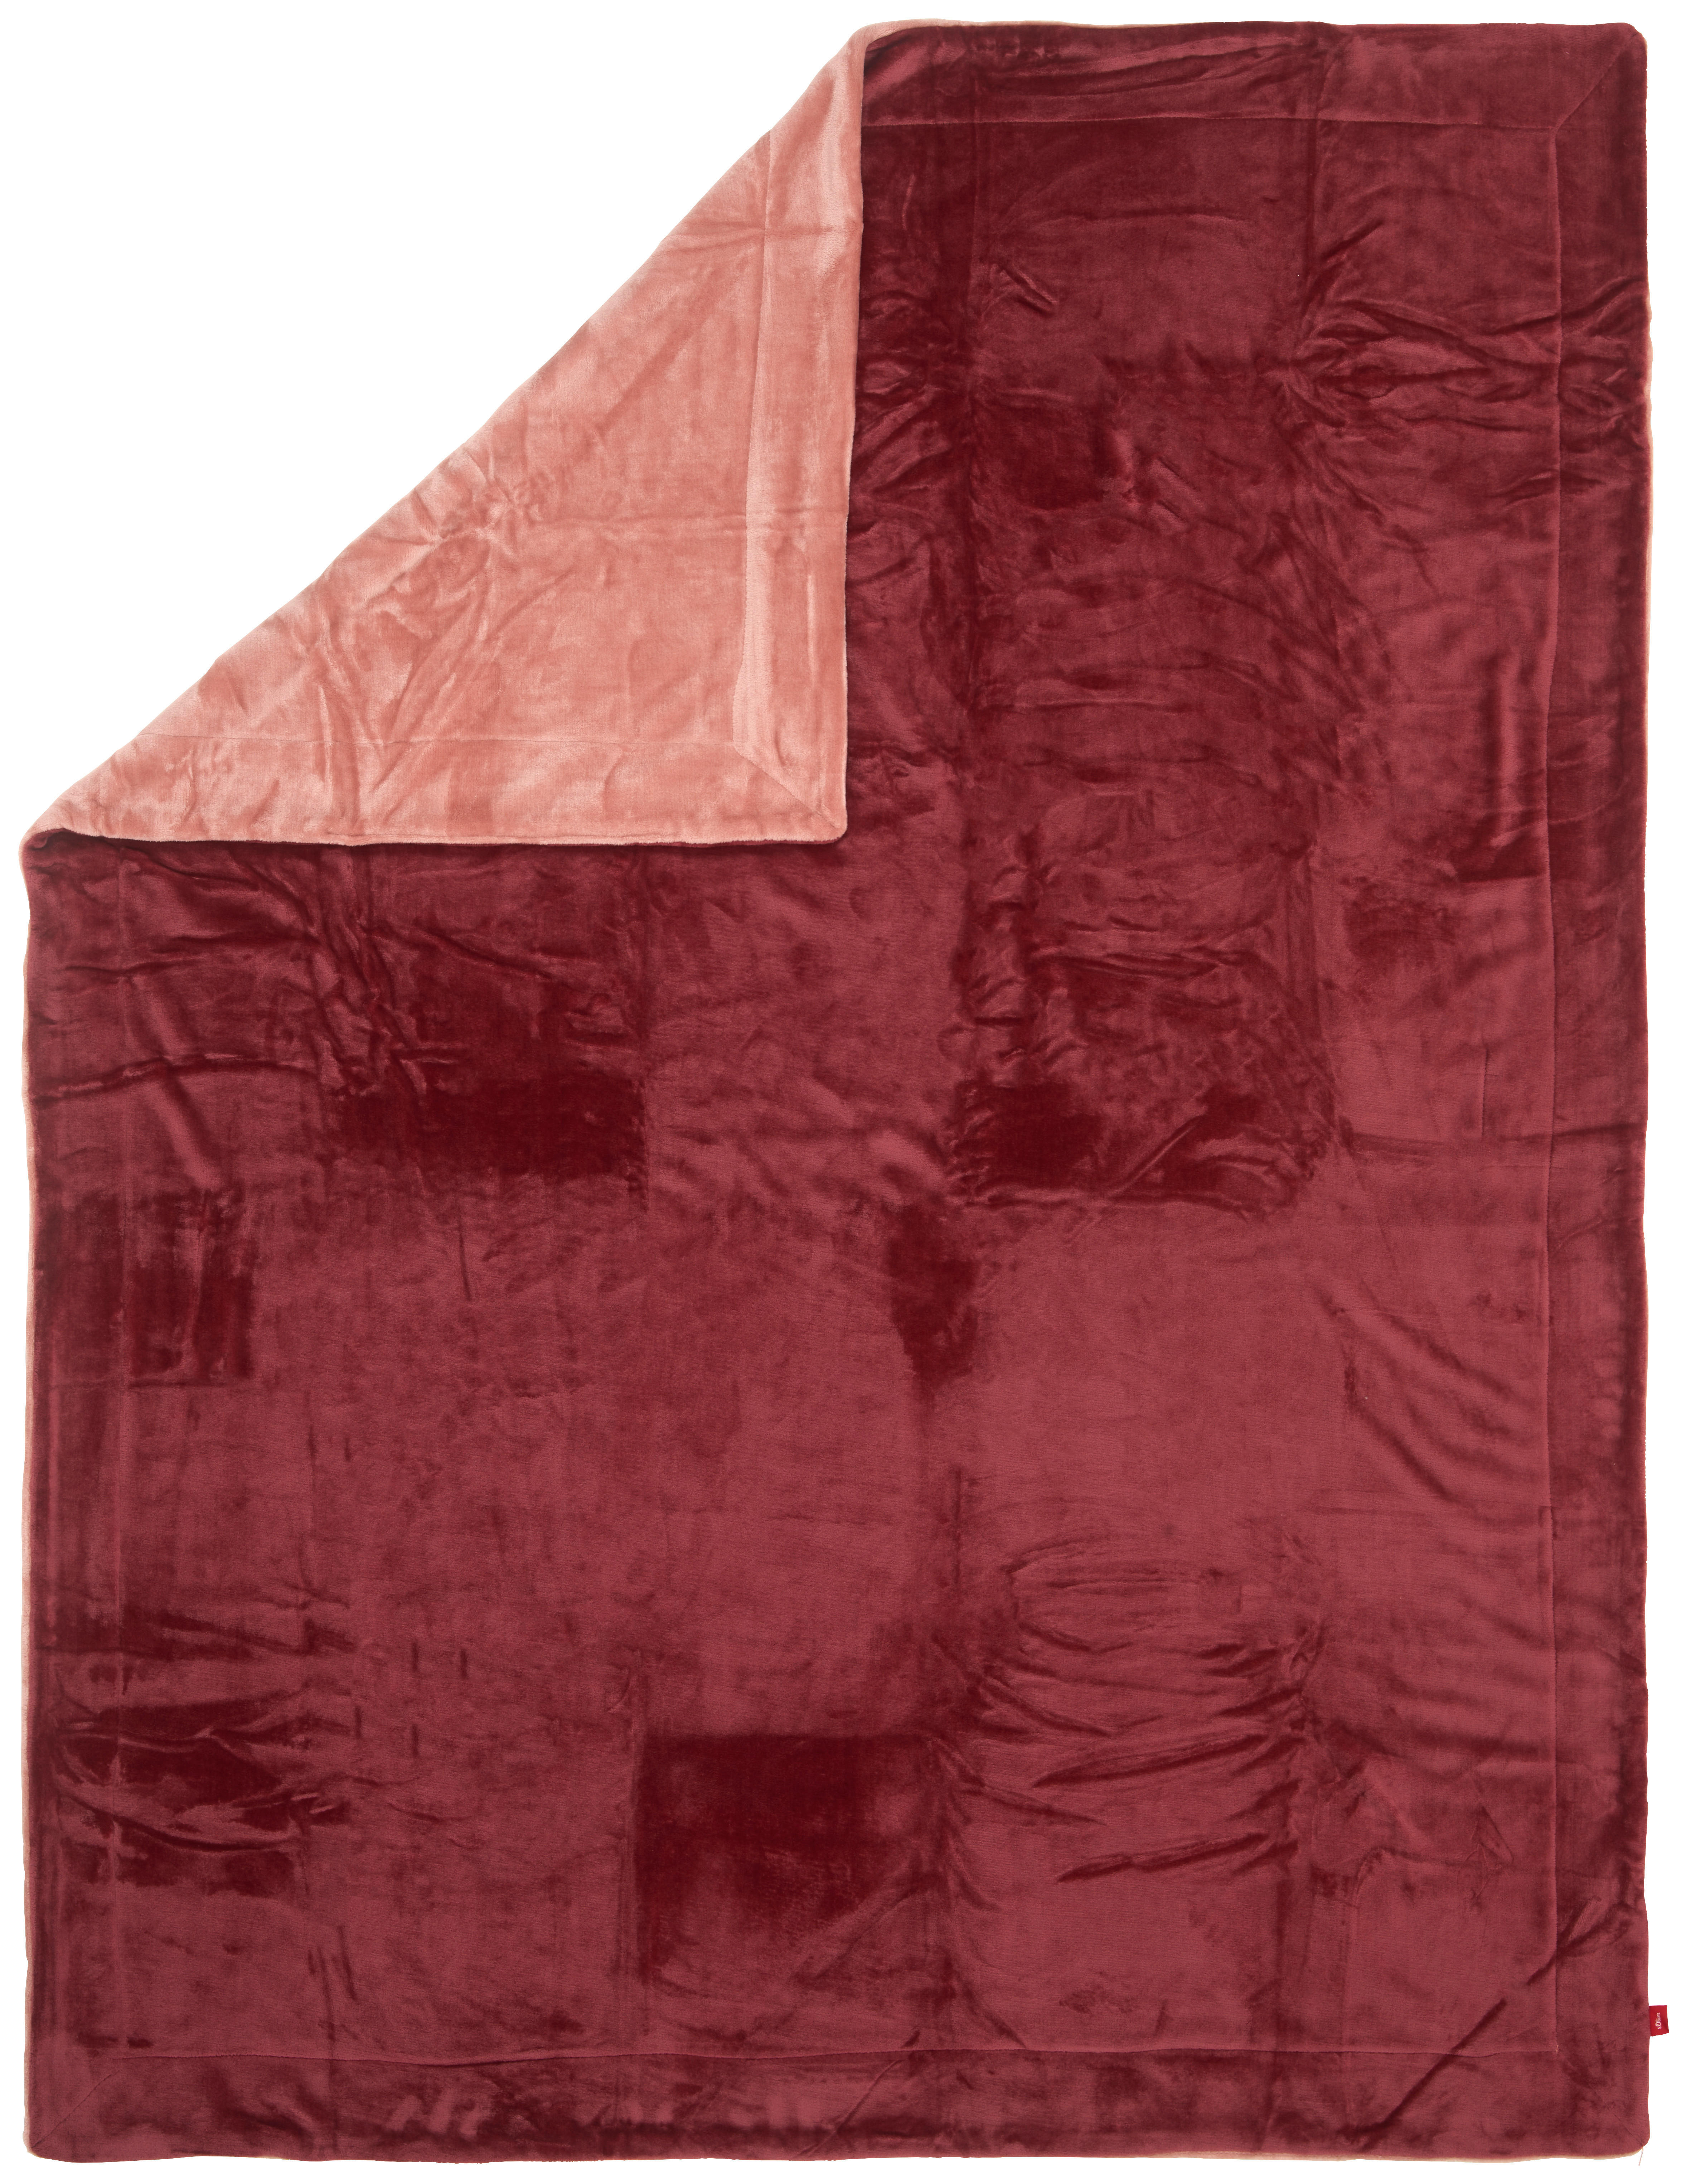 DECKE Double Soft 150/200 cm  - Bordeaux/Rot, KONVENTIONELL, Textil (150/200cm) - S. Oliver